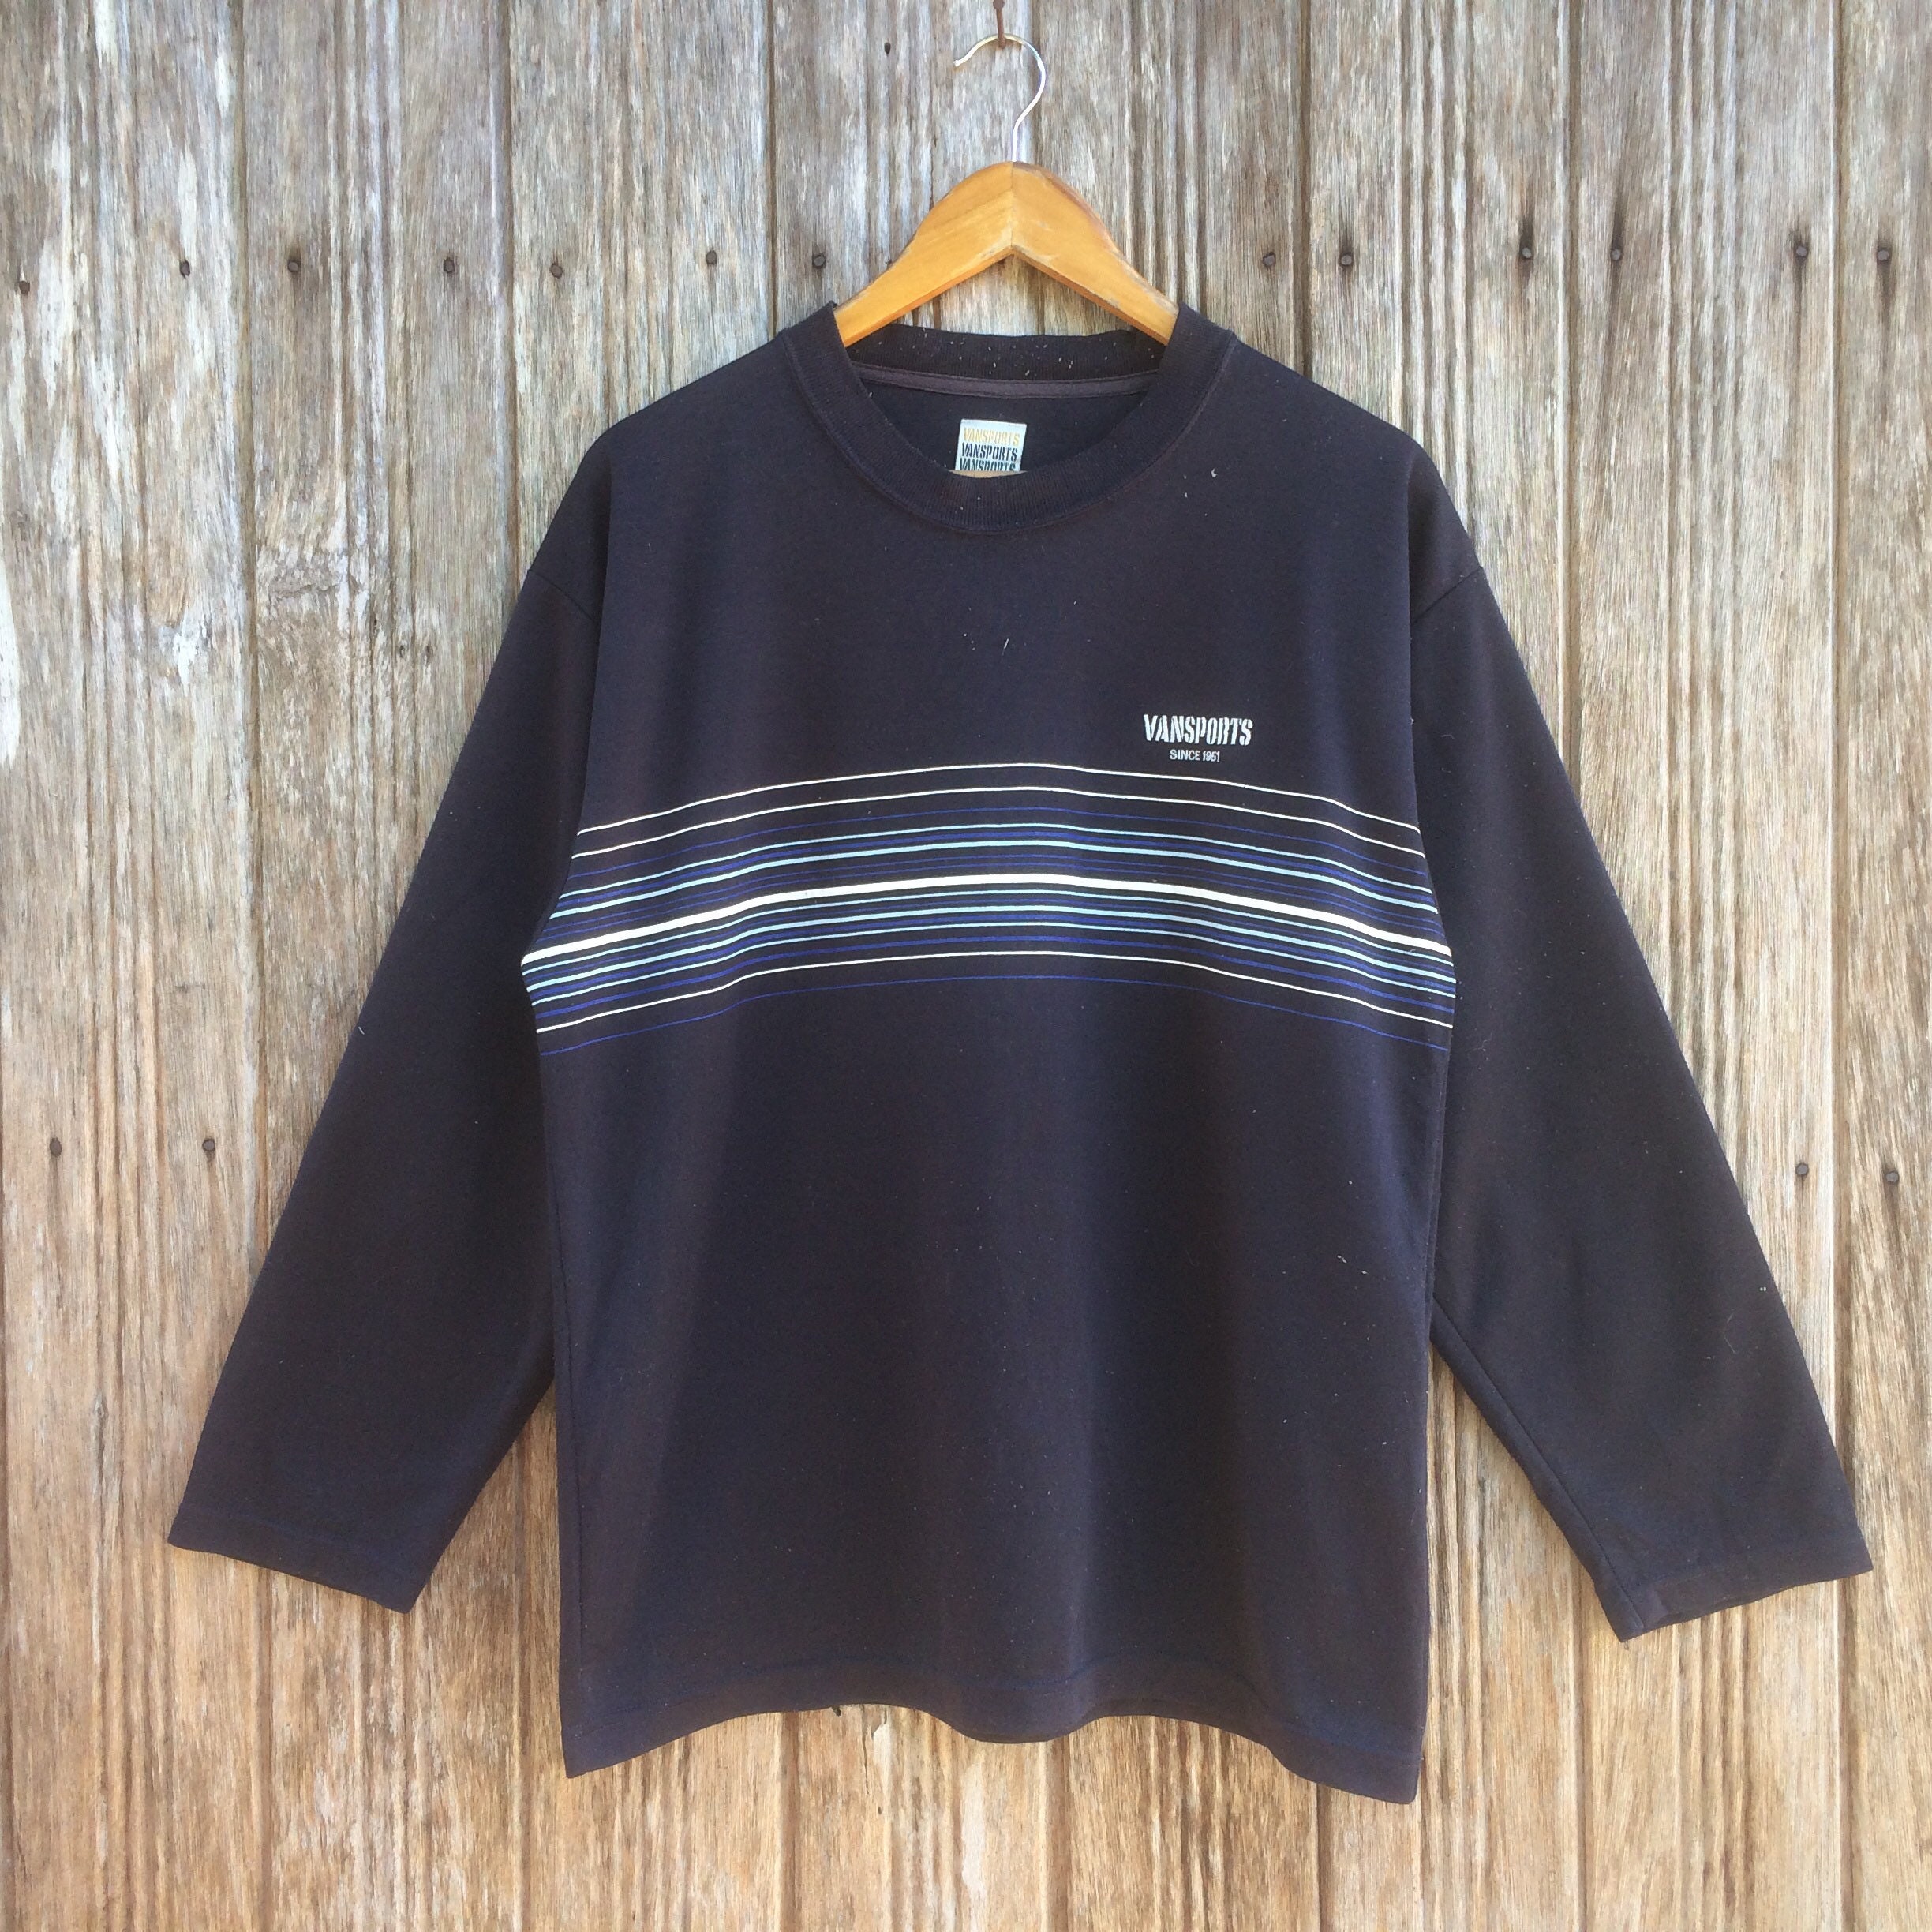 Rare Vansports Stripe Style Sweatshirts Unisex Medium Size | Etsy UK